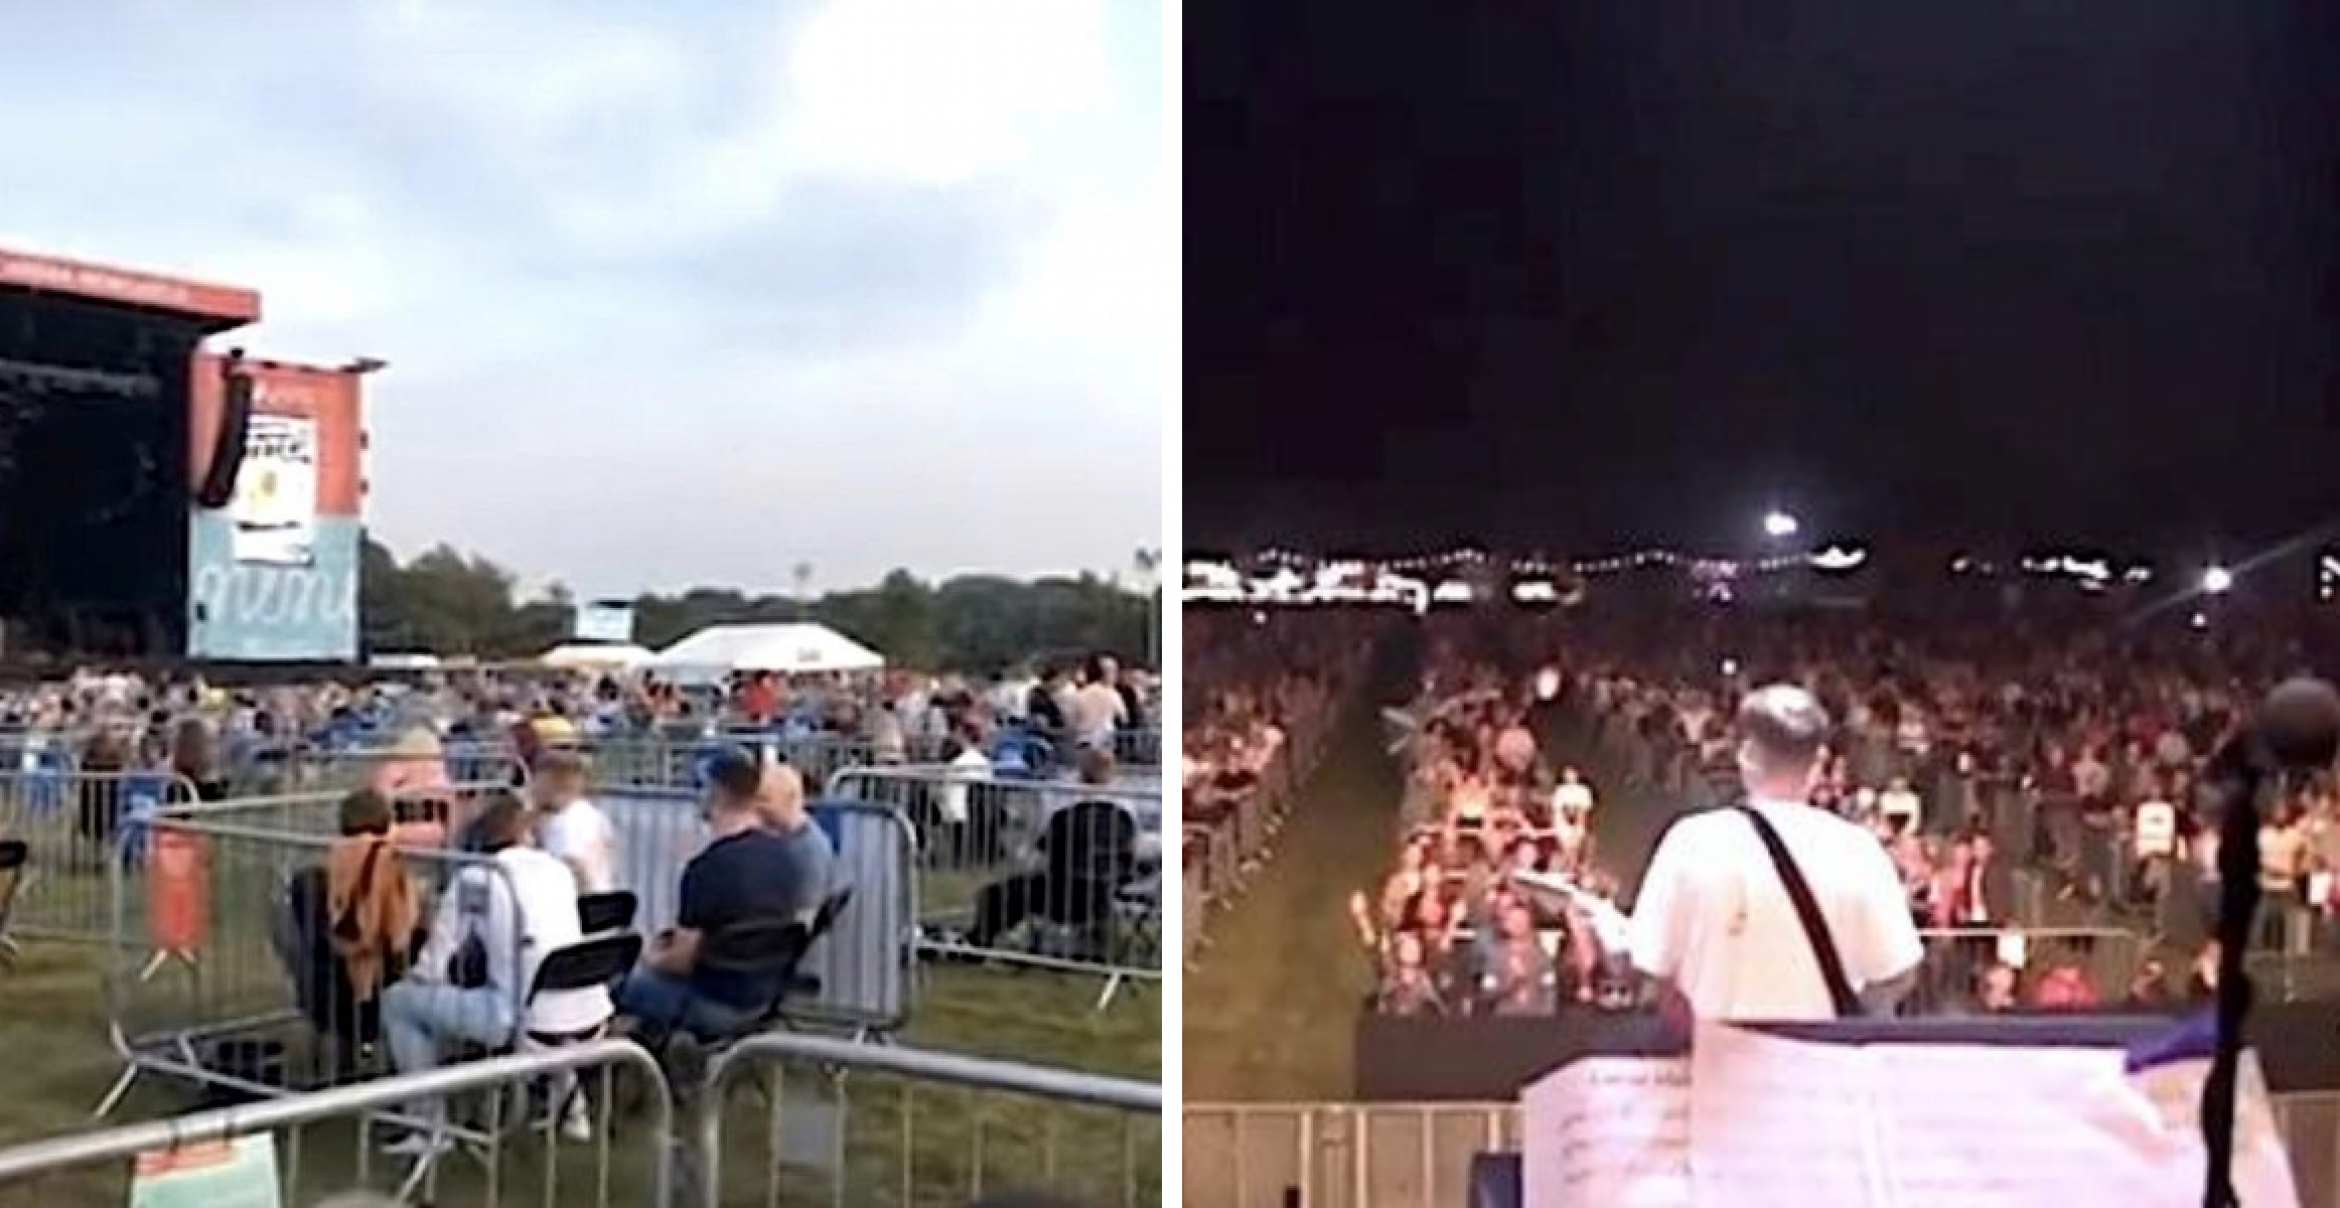 2.500 Zuschauer*innen: England zeigt, wie Großkonzerte zu Corona-Zeiten aussehen